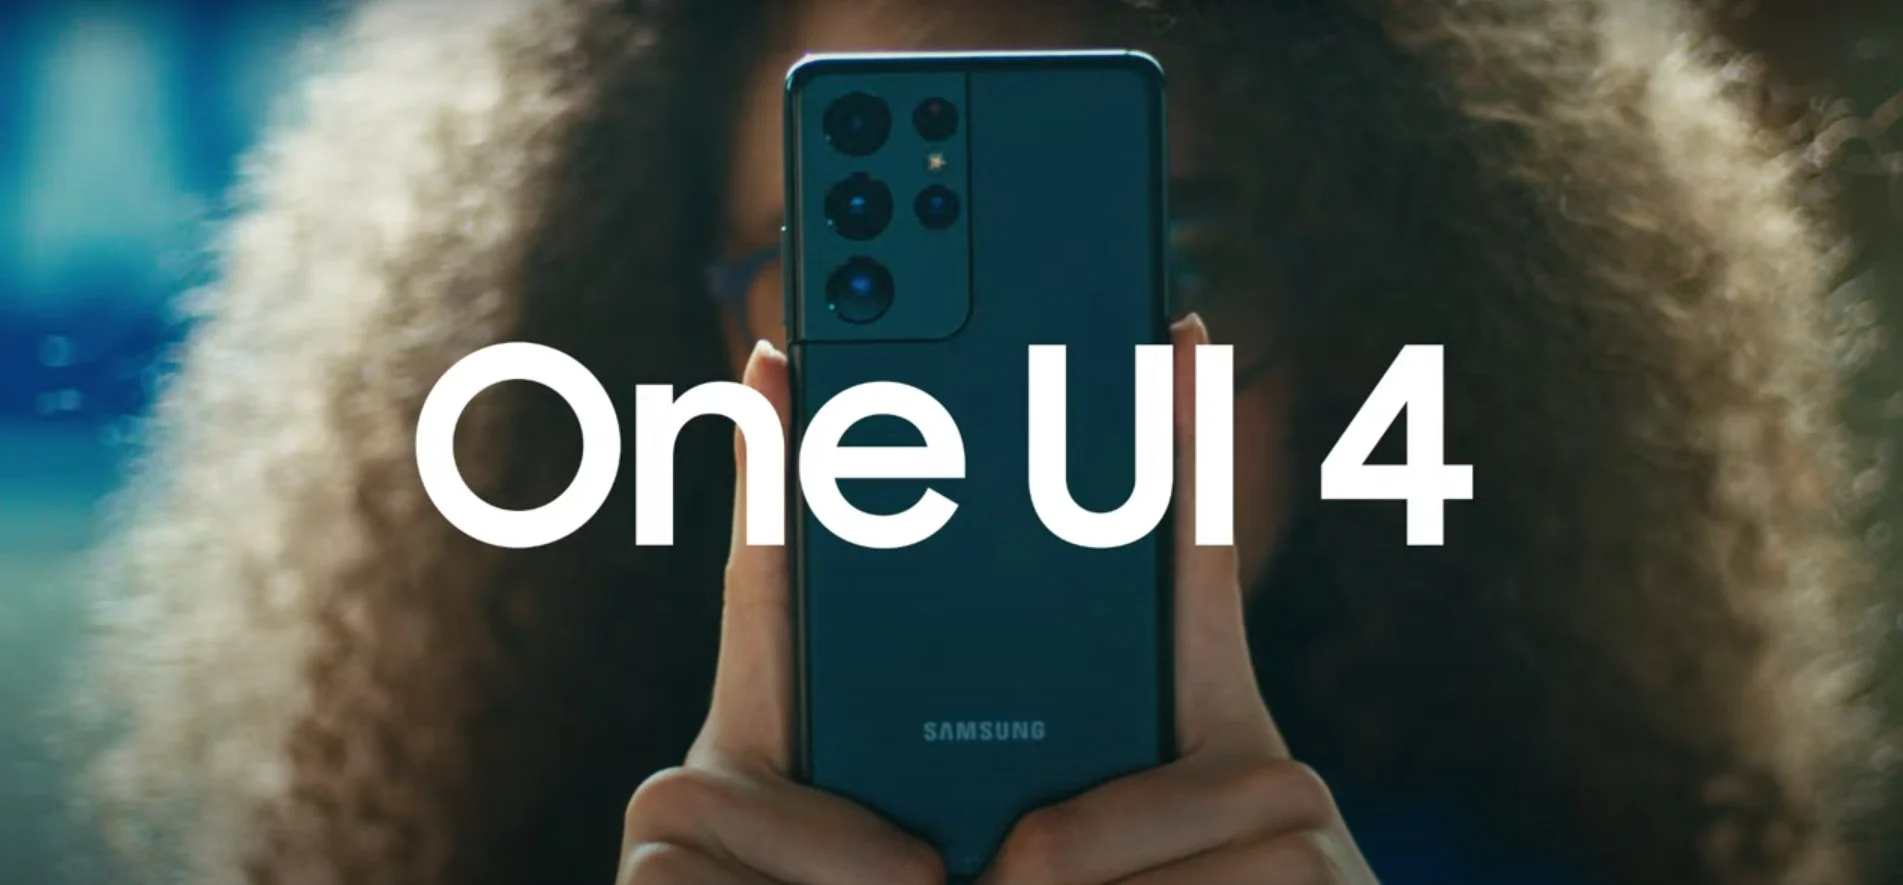 Dwa niedrogie smartfony Samsunga otrzymają One UI 4.0 przed terminem